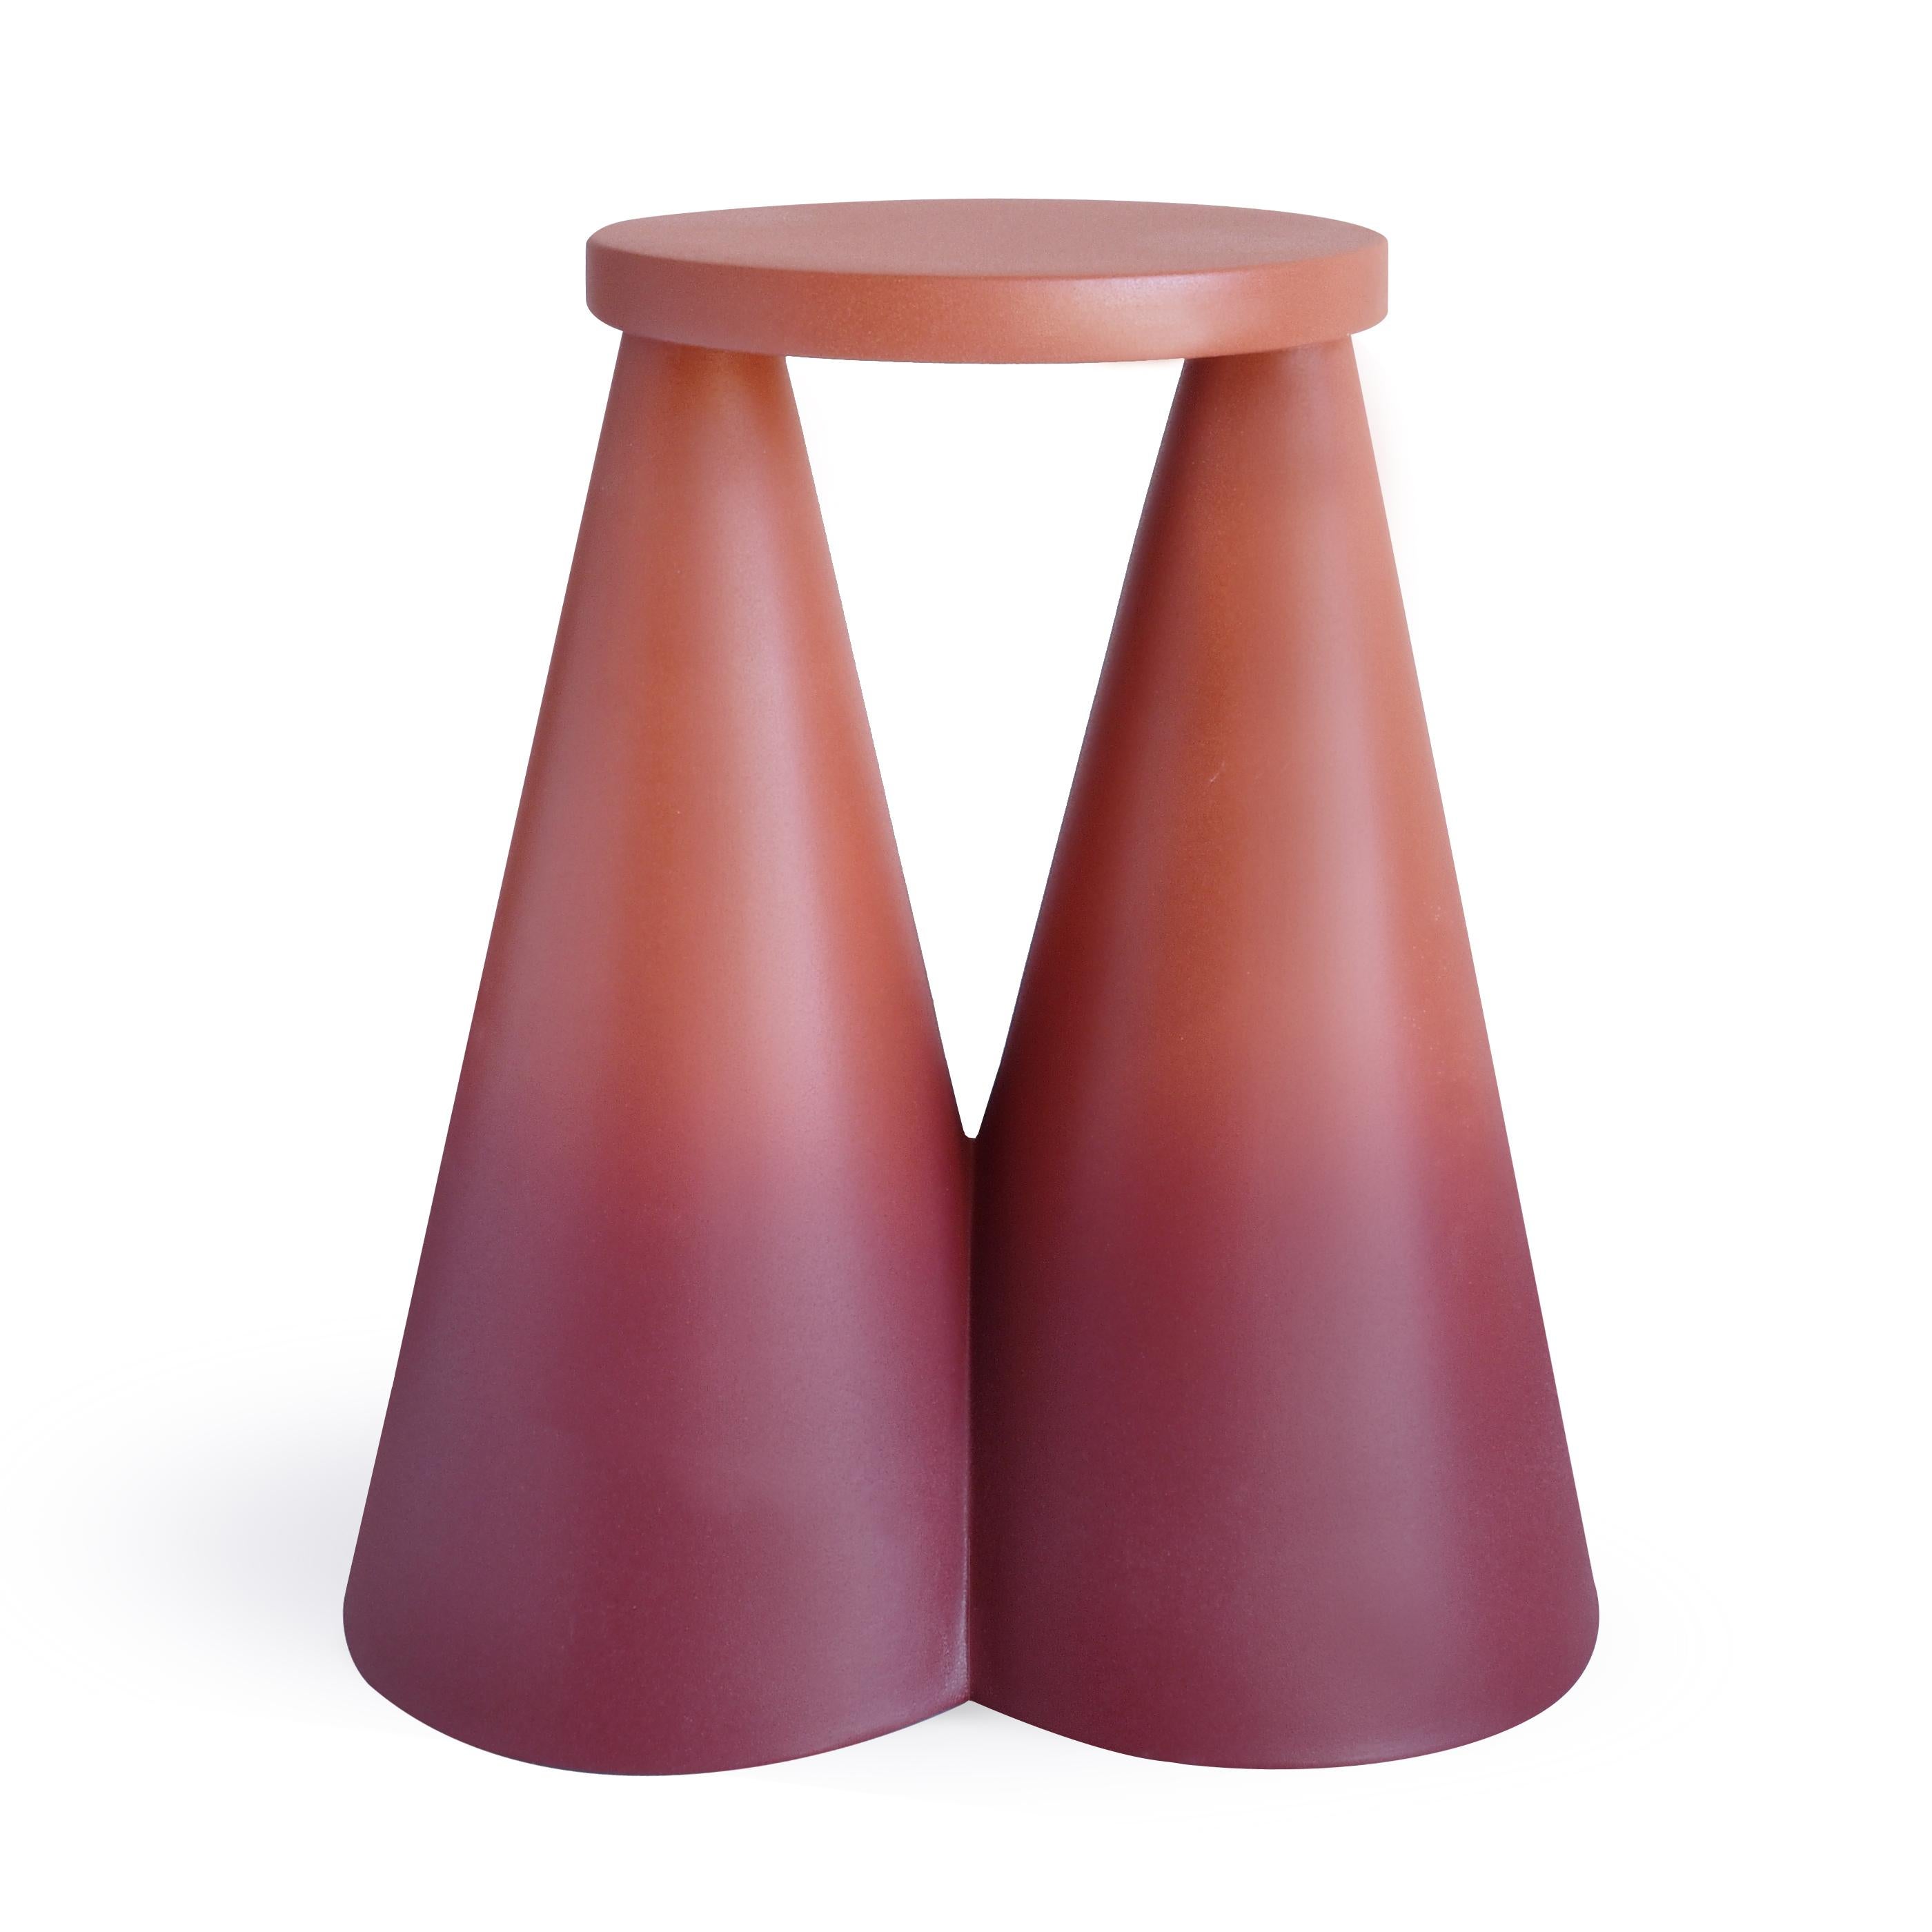 Isola/ Keramik konischer Beistelltisch/ Otto, entworfen von Cara/Davide für Portego